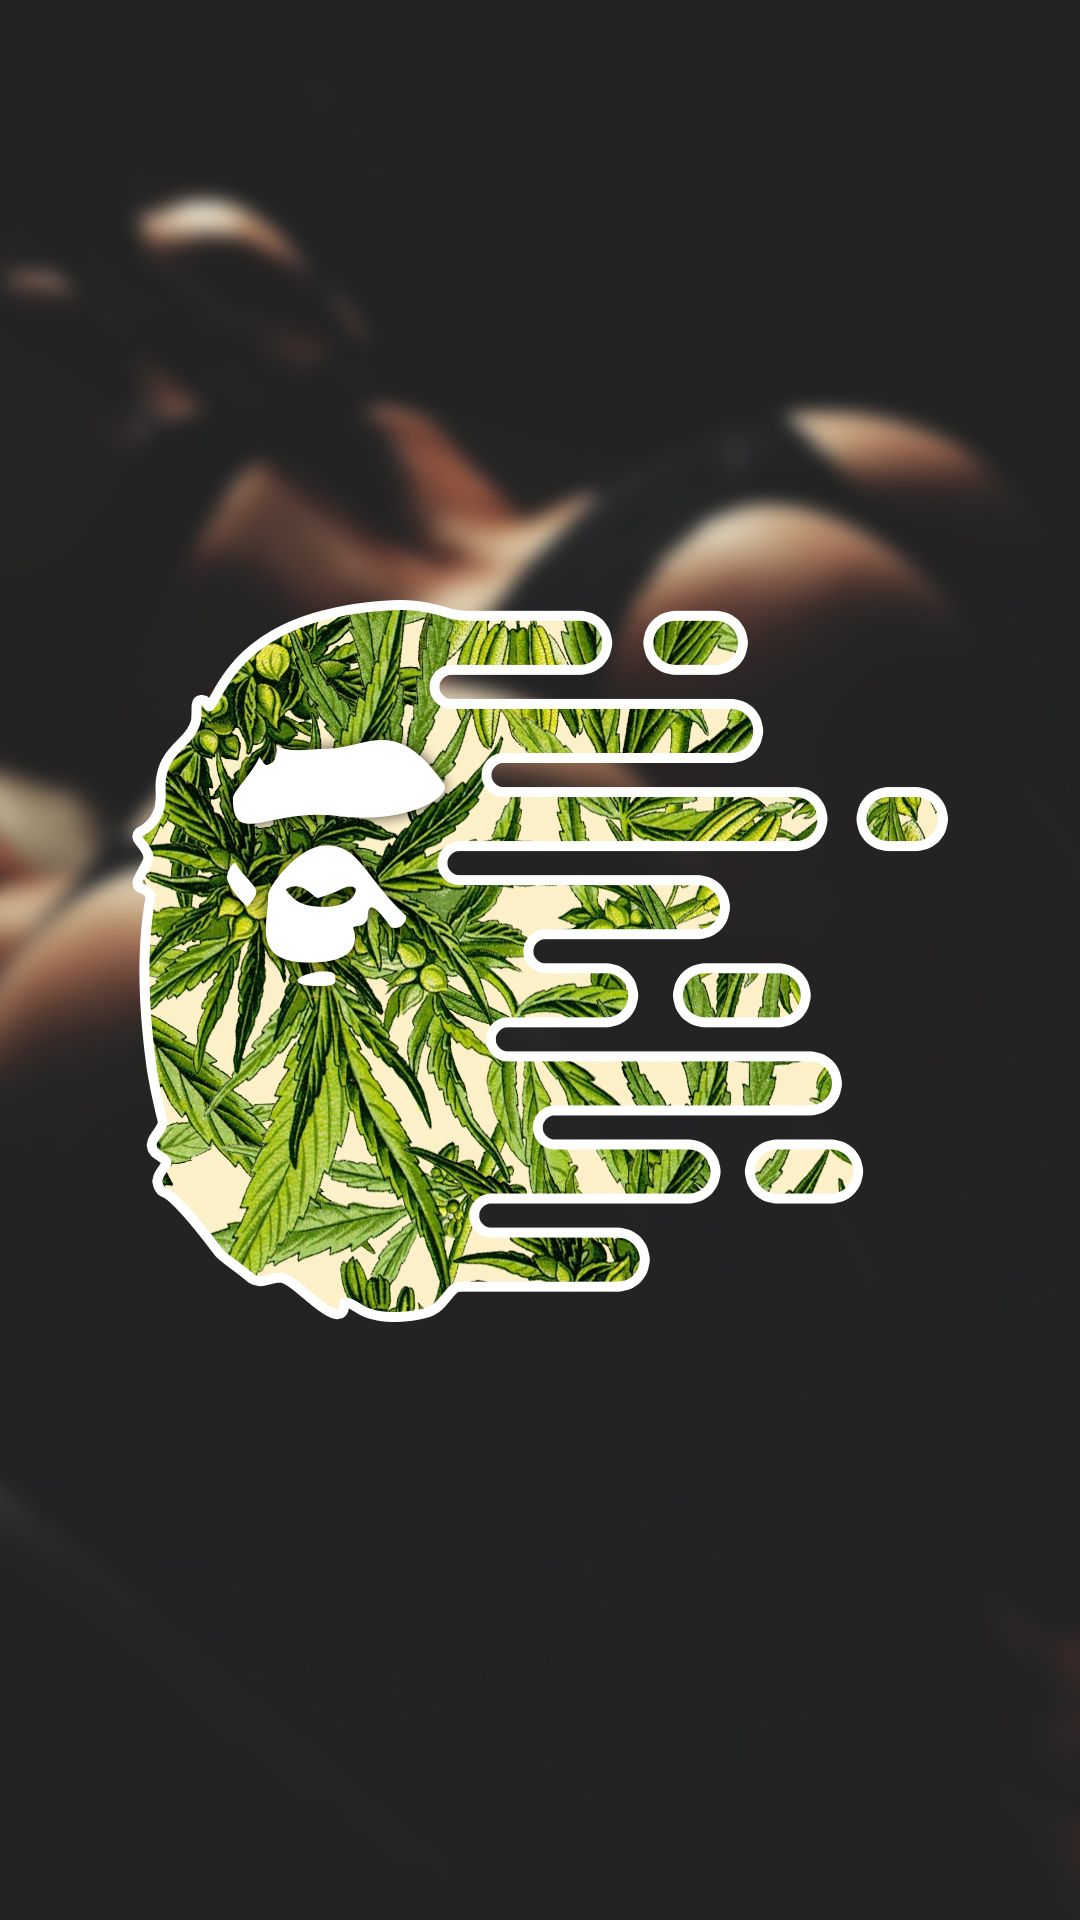 bathing ape wallpaper,green,leaf,plant,illustration,font